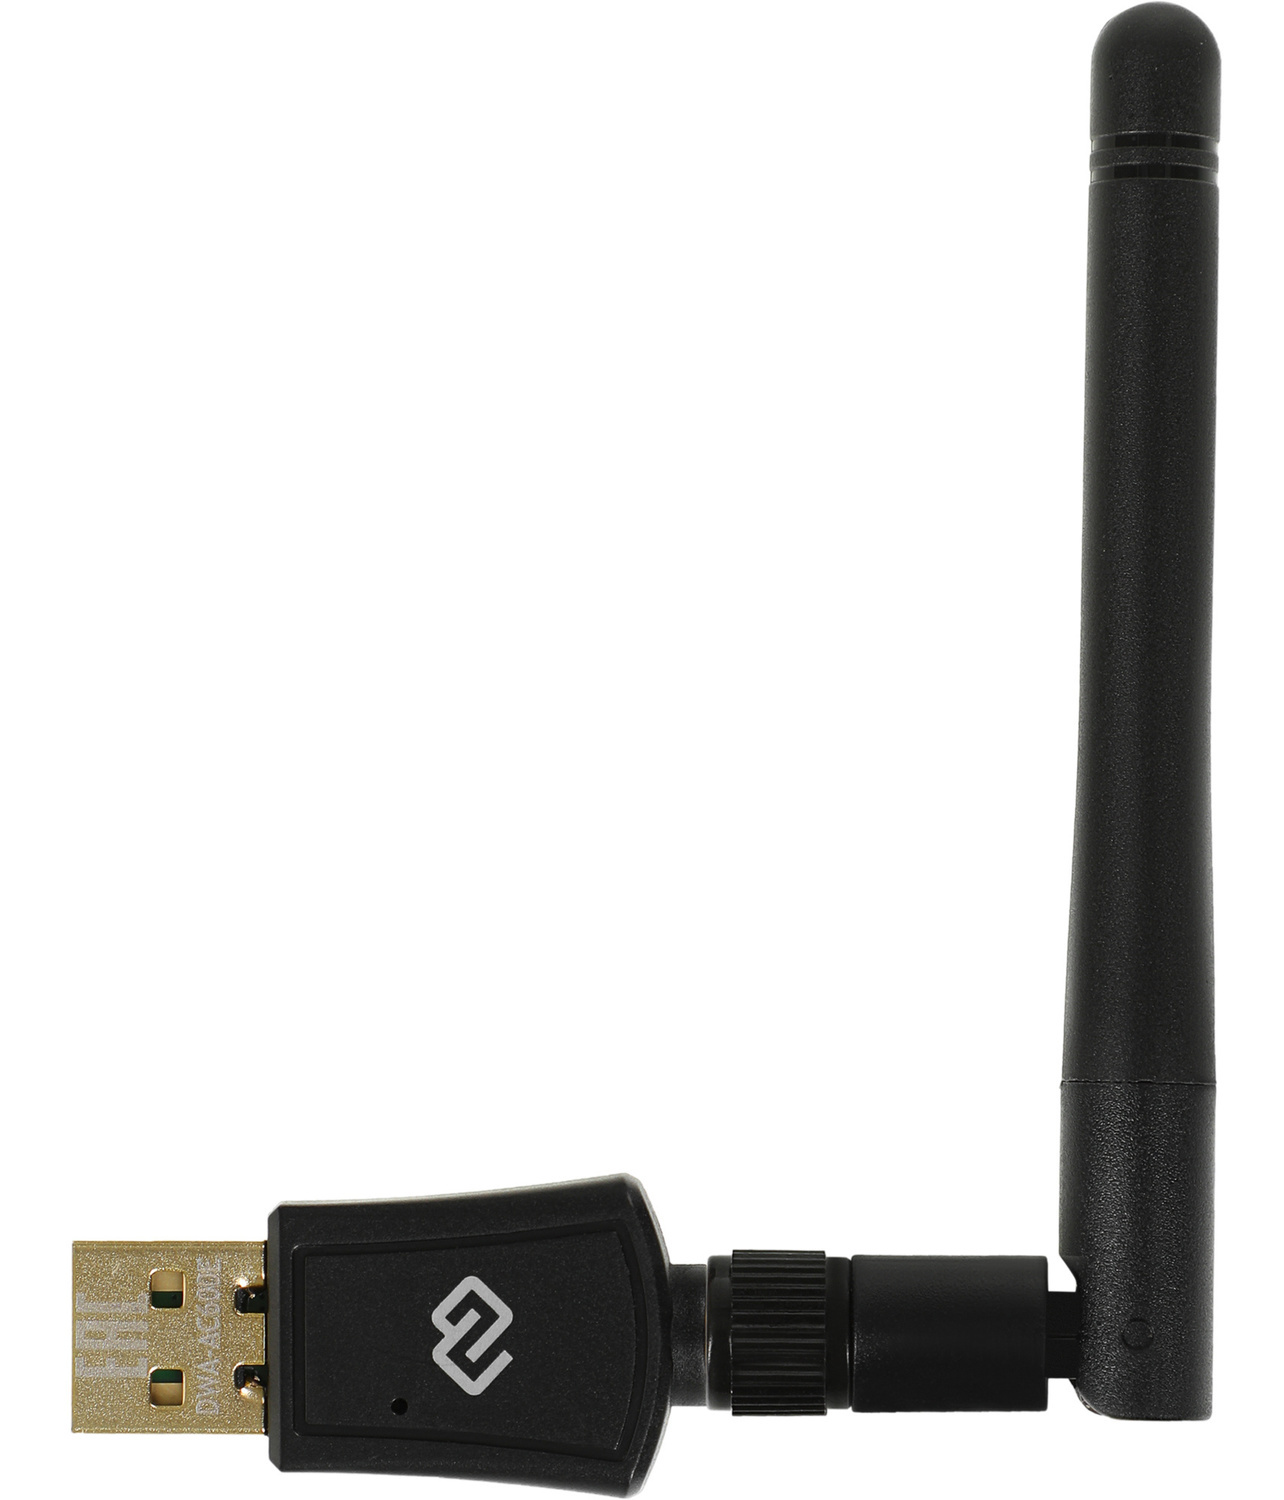  Wi-Fi DIGMA DWA-AC600E